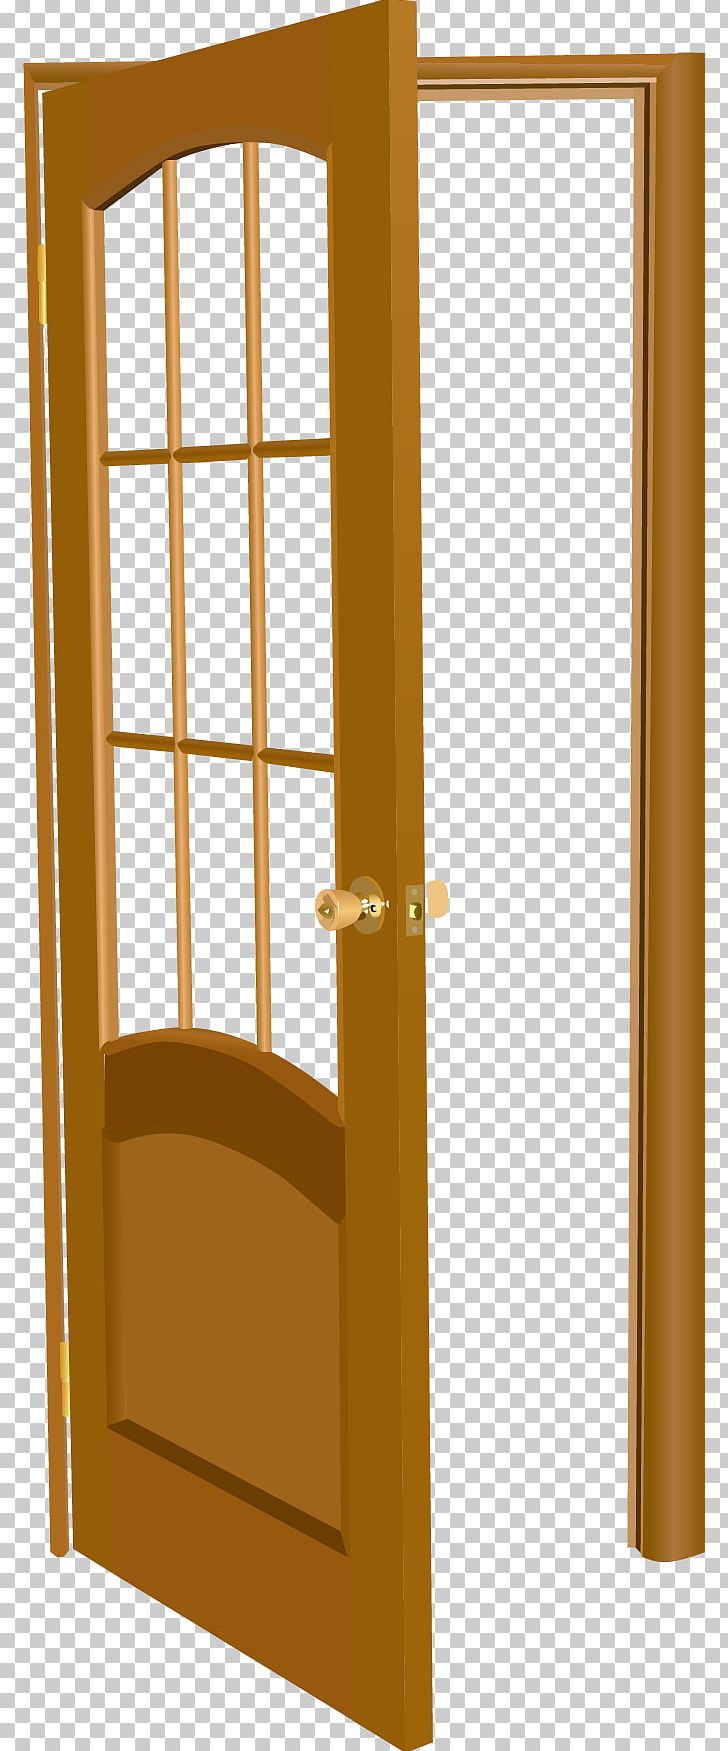 Table Door Window Illustration PNG, Clipart, Angle, Building, Deck, Door, Doors Free PNG Download